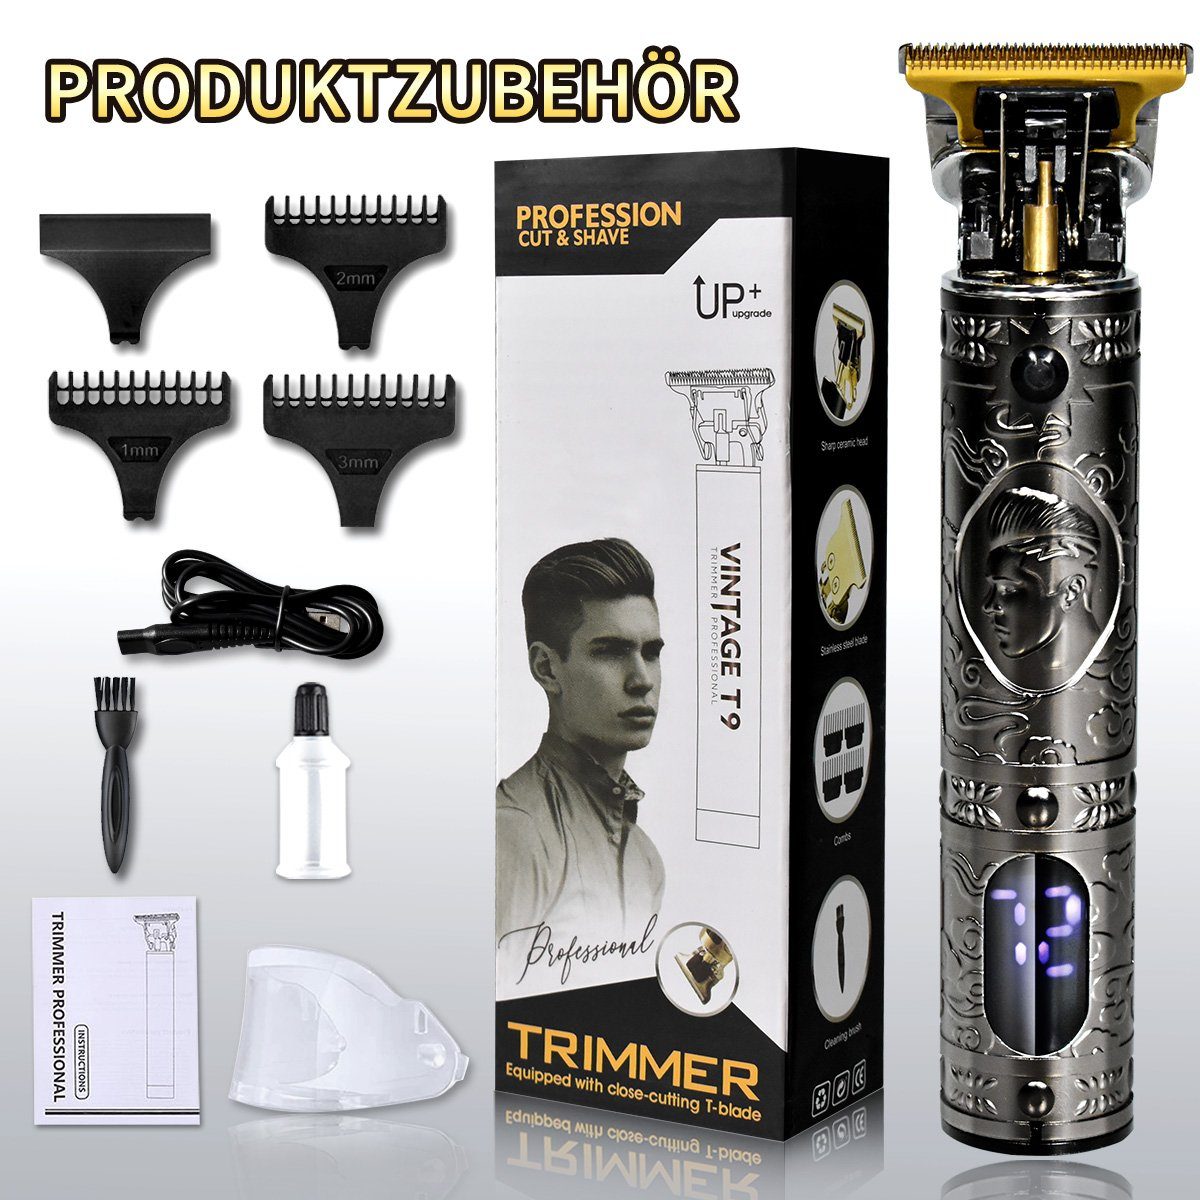 LifeImpree Haarschneidemaschine T-Blade Multifunktionstrimmer, Bartschneider Profi Haarschneider